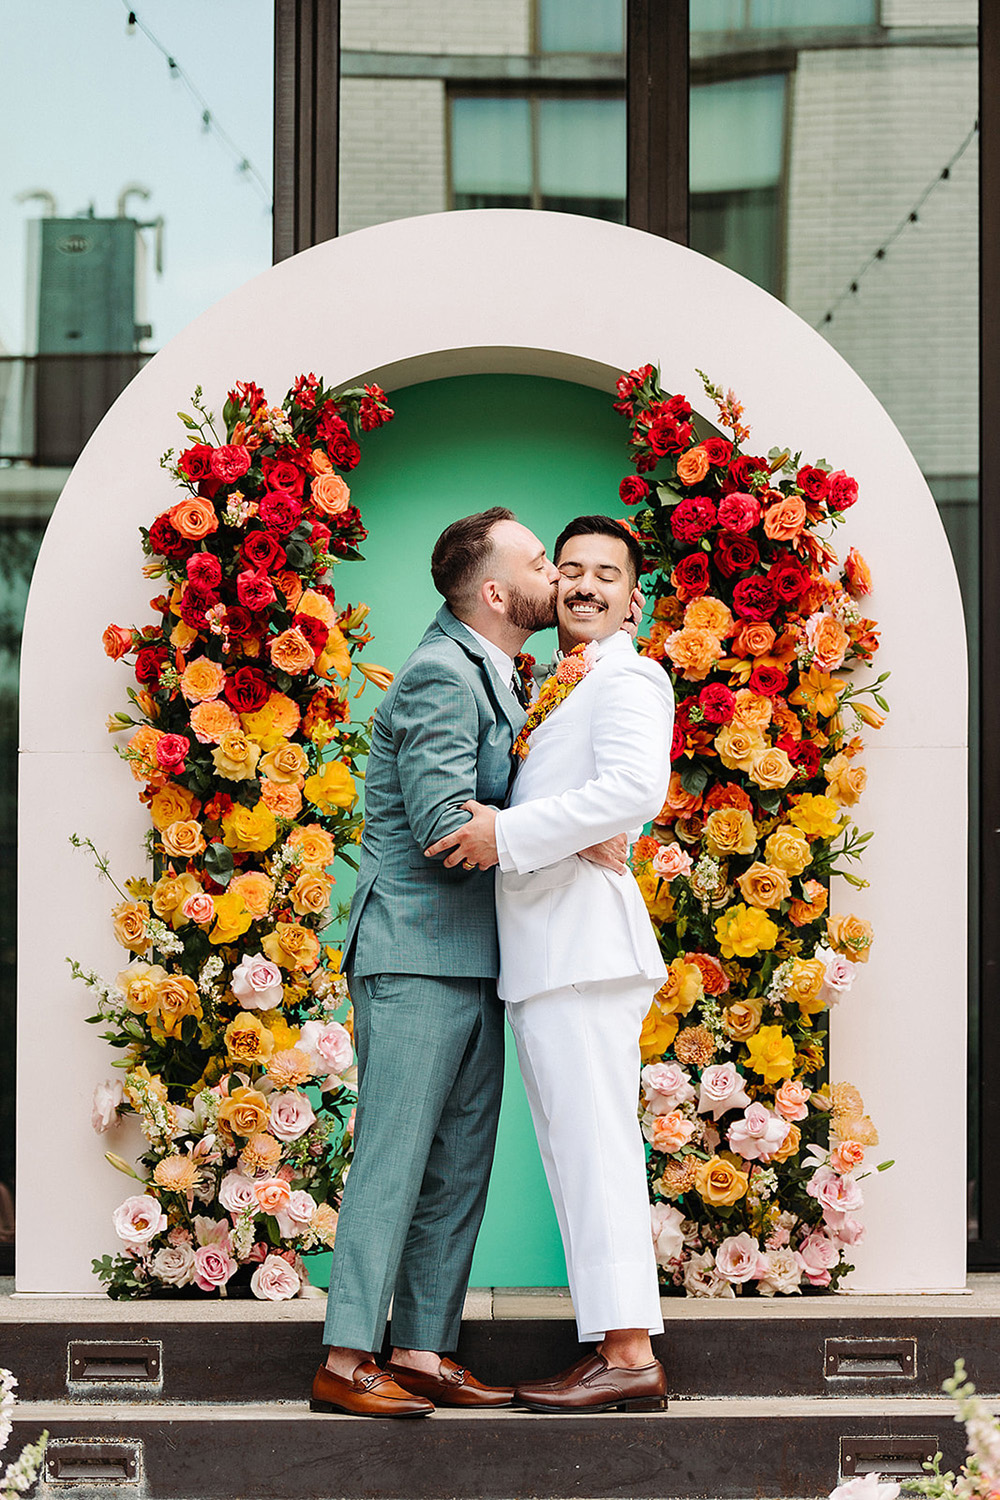 rainbow wedding arch for wedding ceremony